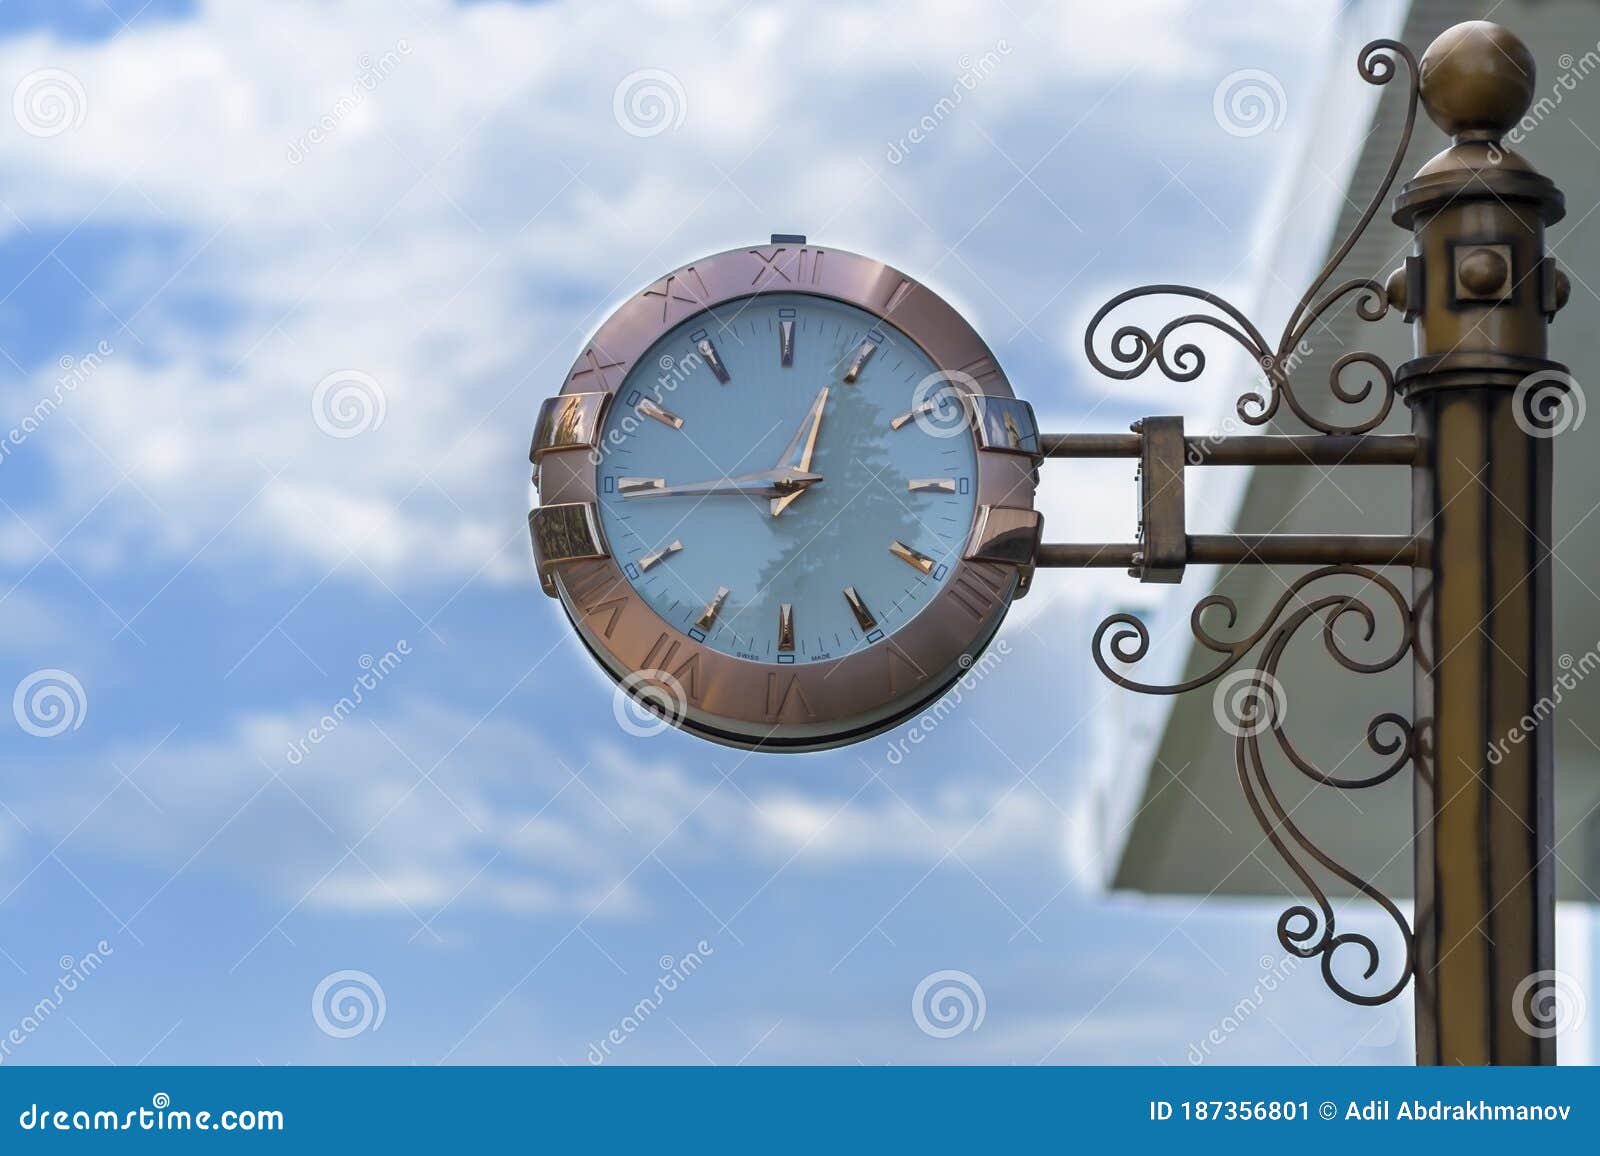 classic style streeet clock.